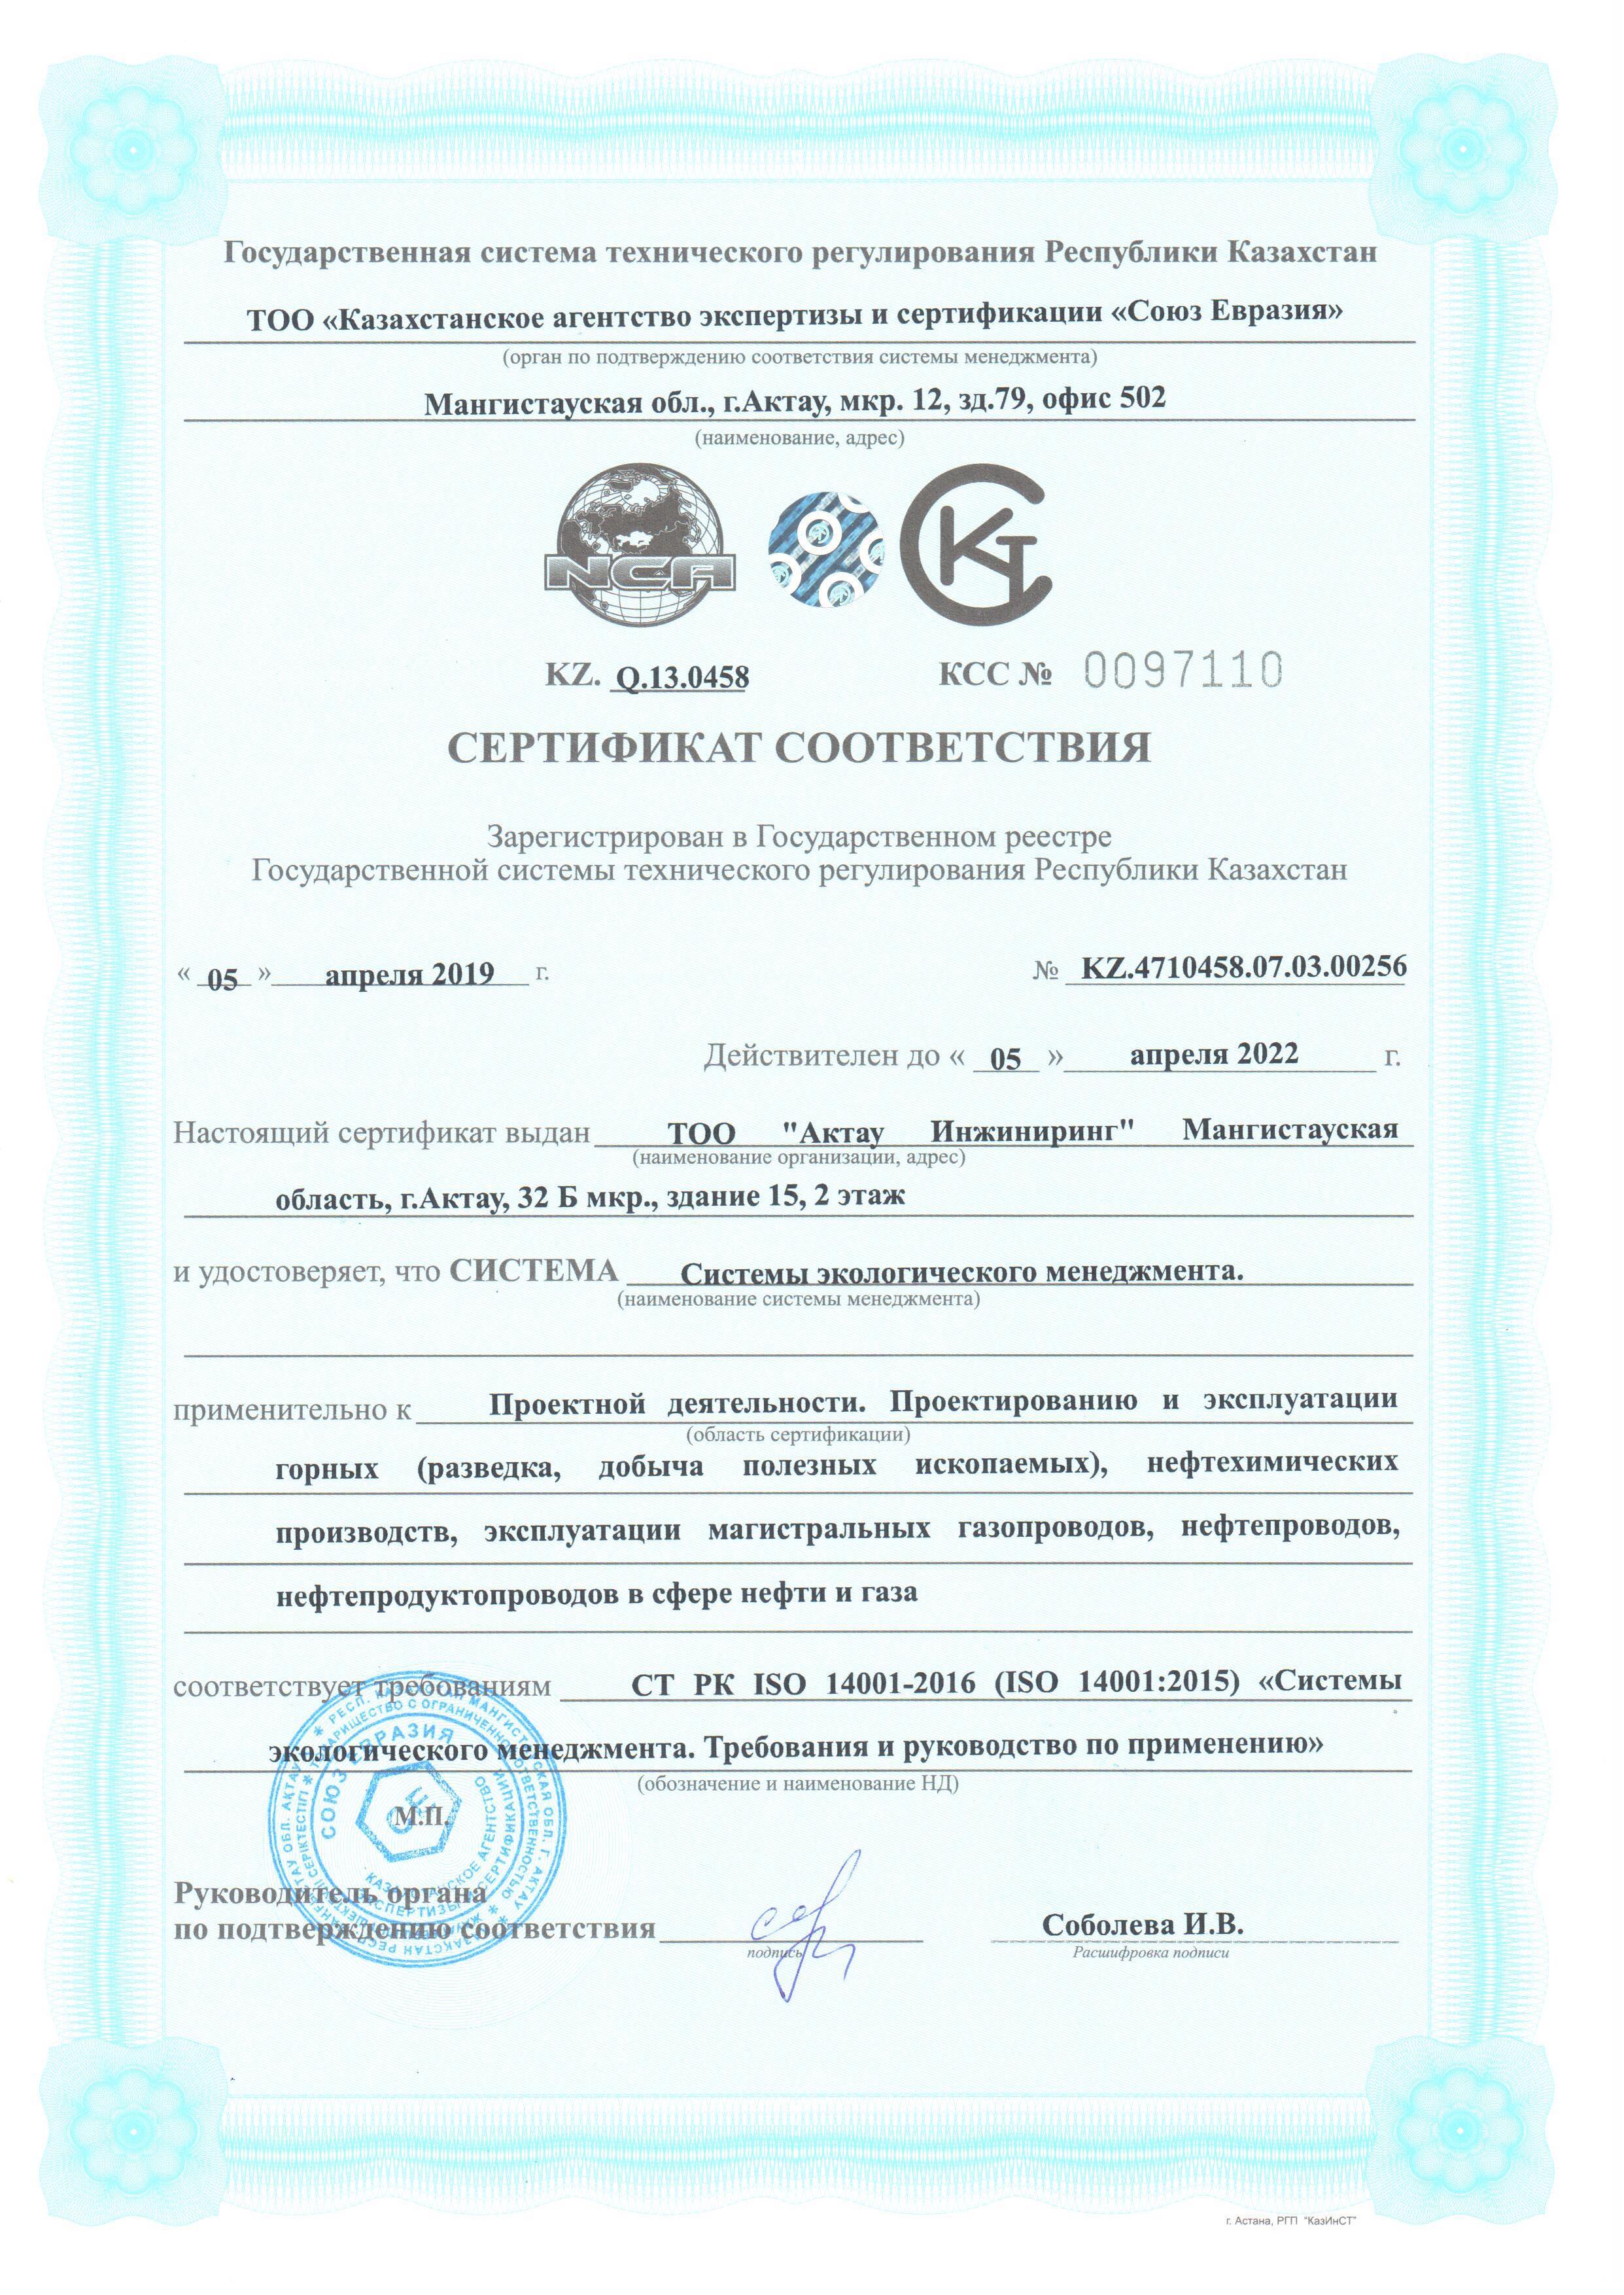 Сертификат экологический менеджмент CT РК ISO 14001-2016 - 0001